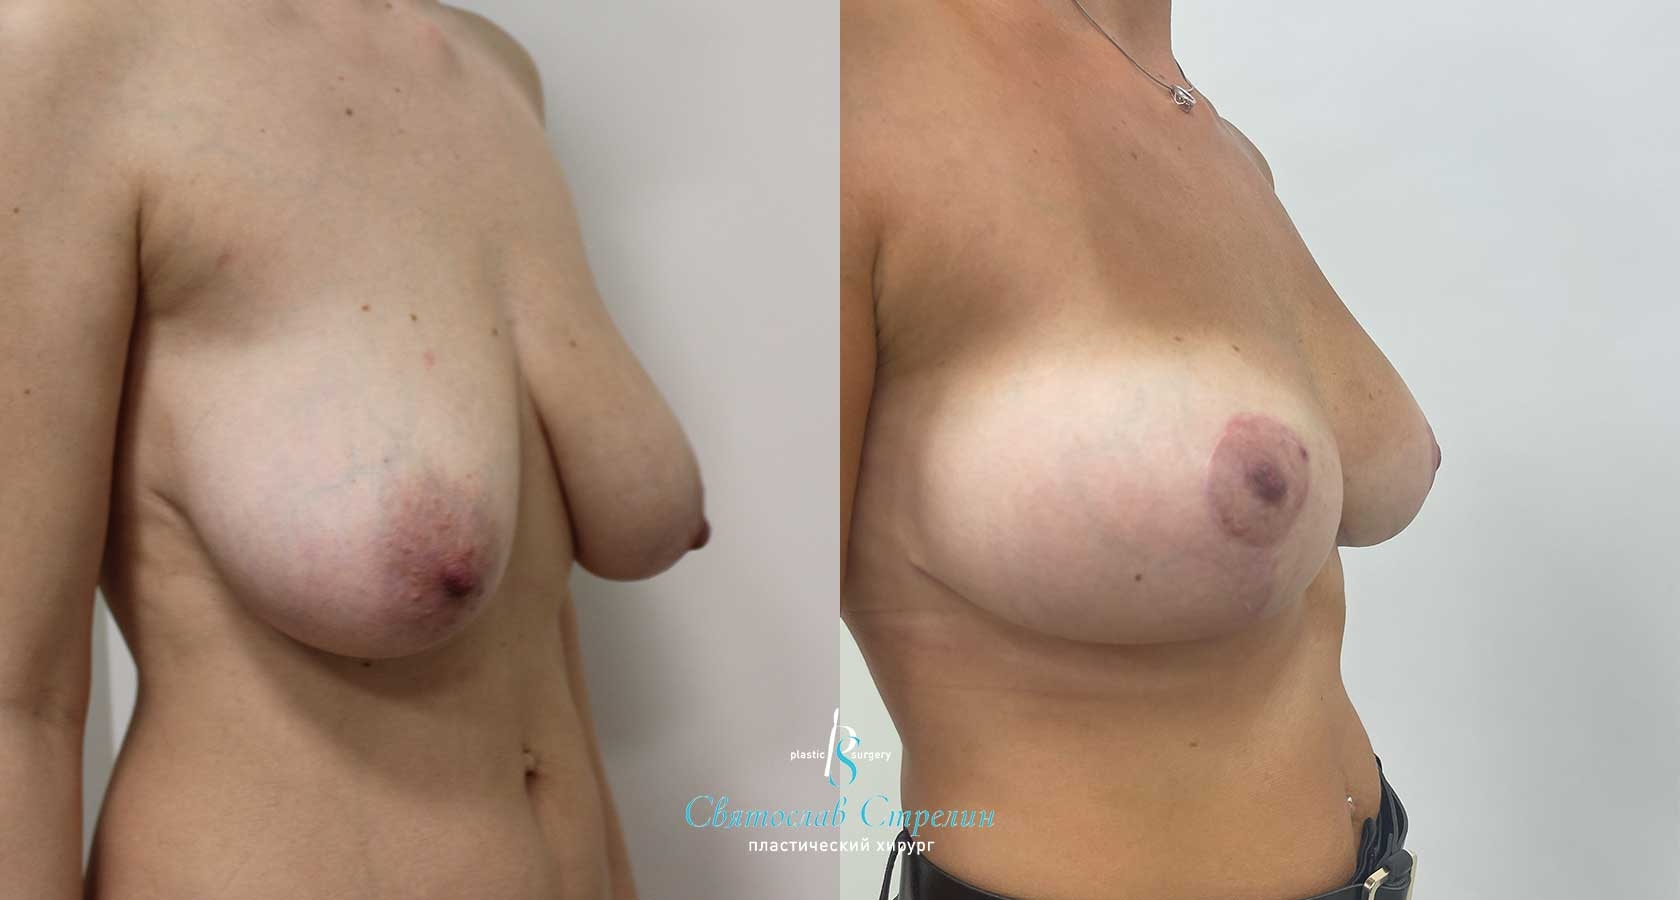 Подтяжка груди, 6 месяцев после операции